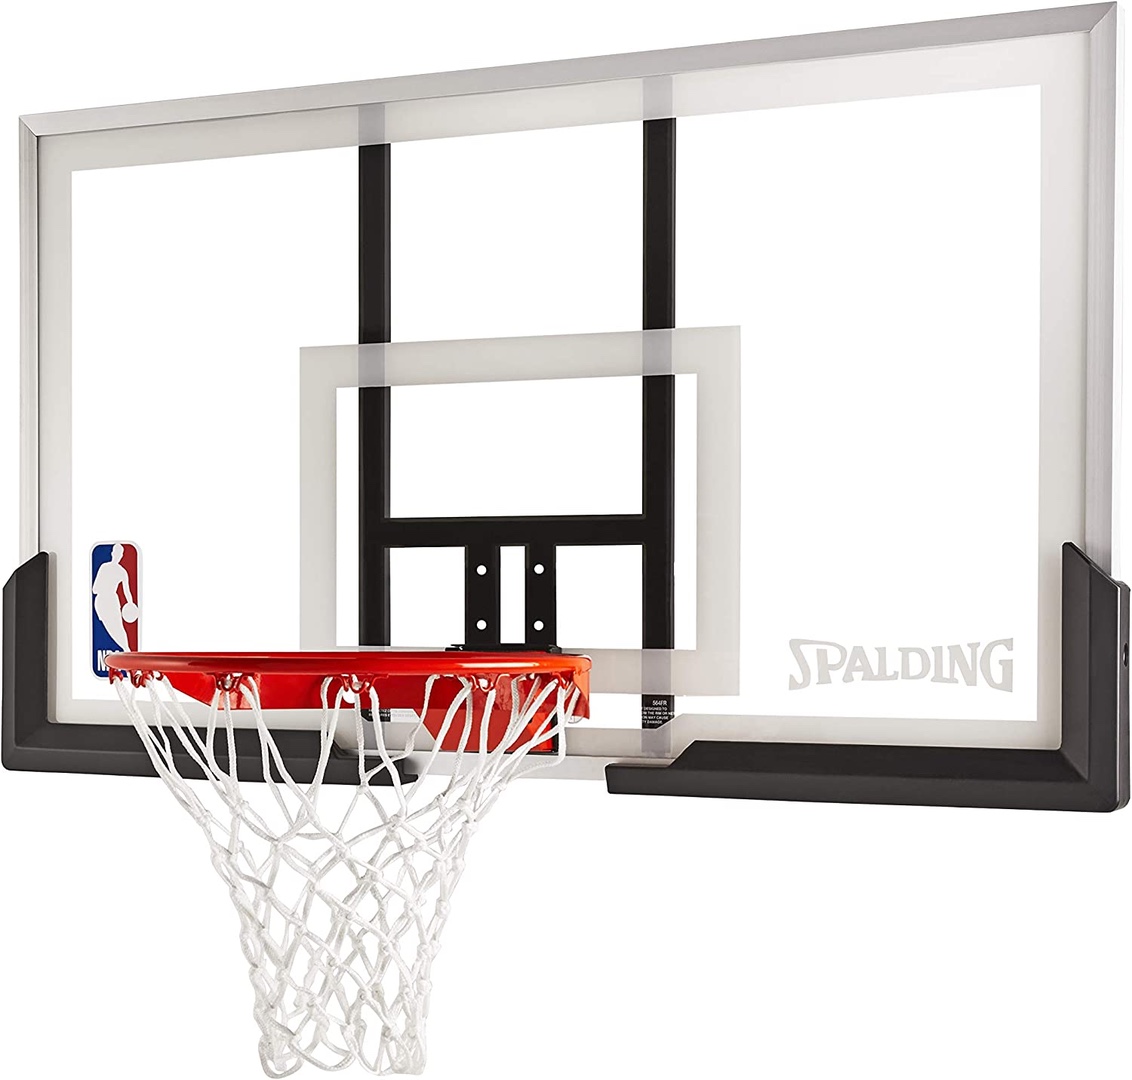 deportes - Tablero de basket basketball baloncesto nueva en acrilico con aro, malla y bola 1